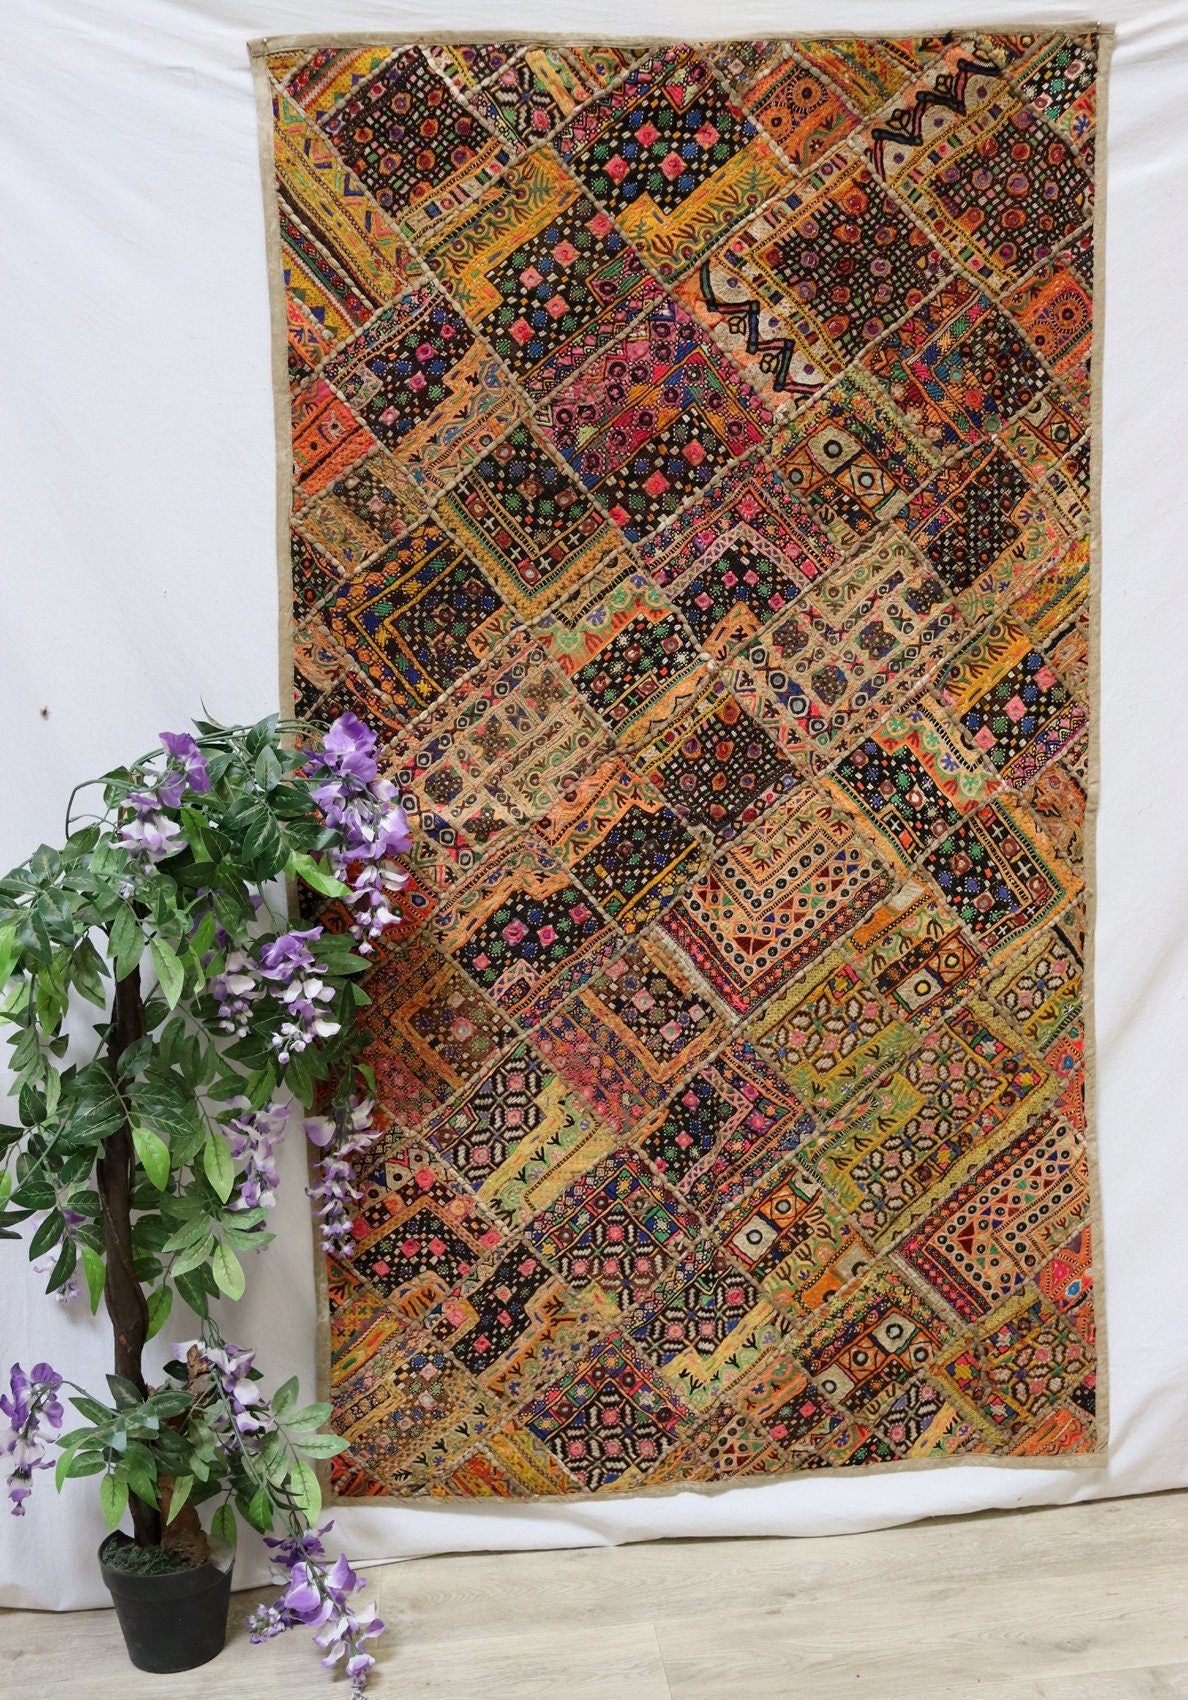 175x98 cm Vintage Bohemian orientalische Patchwork Wandbehang Wandteppich Teppich  Nr:22/24 Wandbehang Orientsbazar   